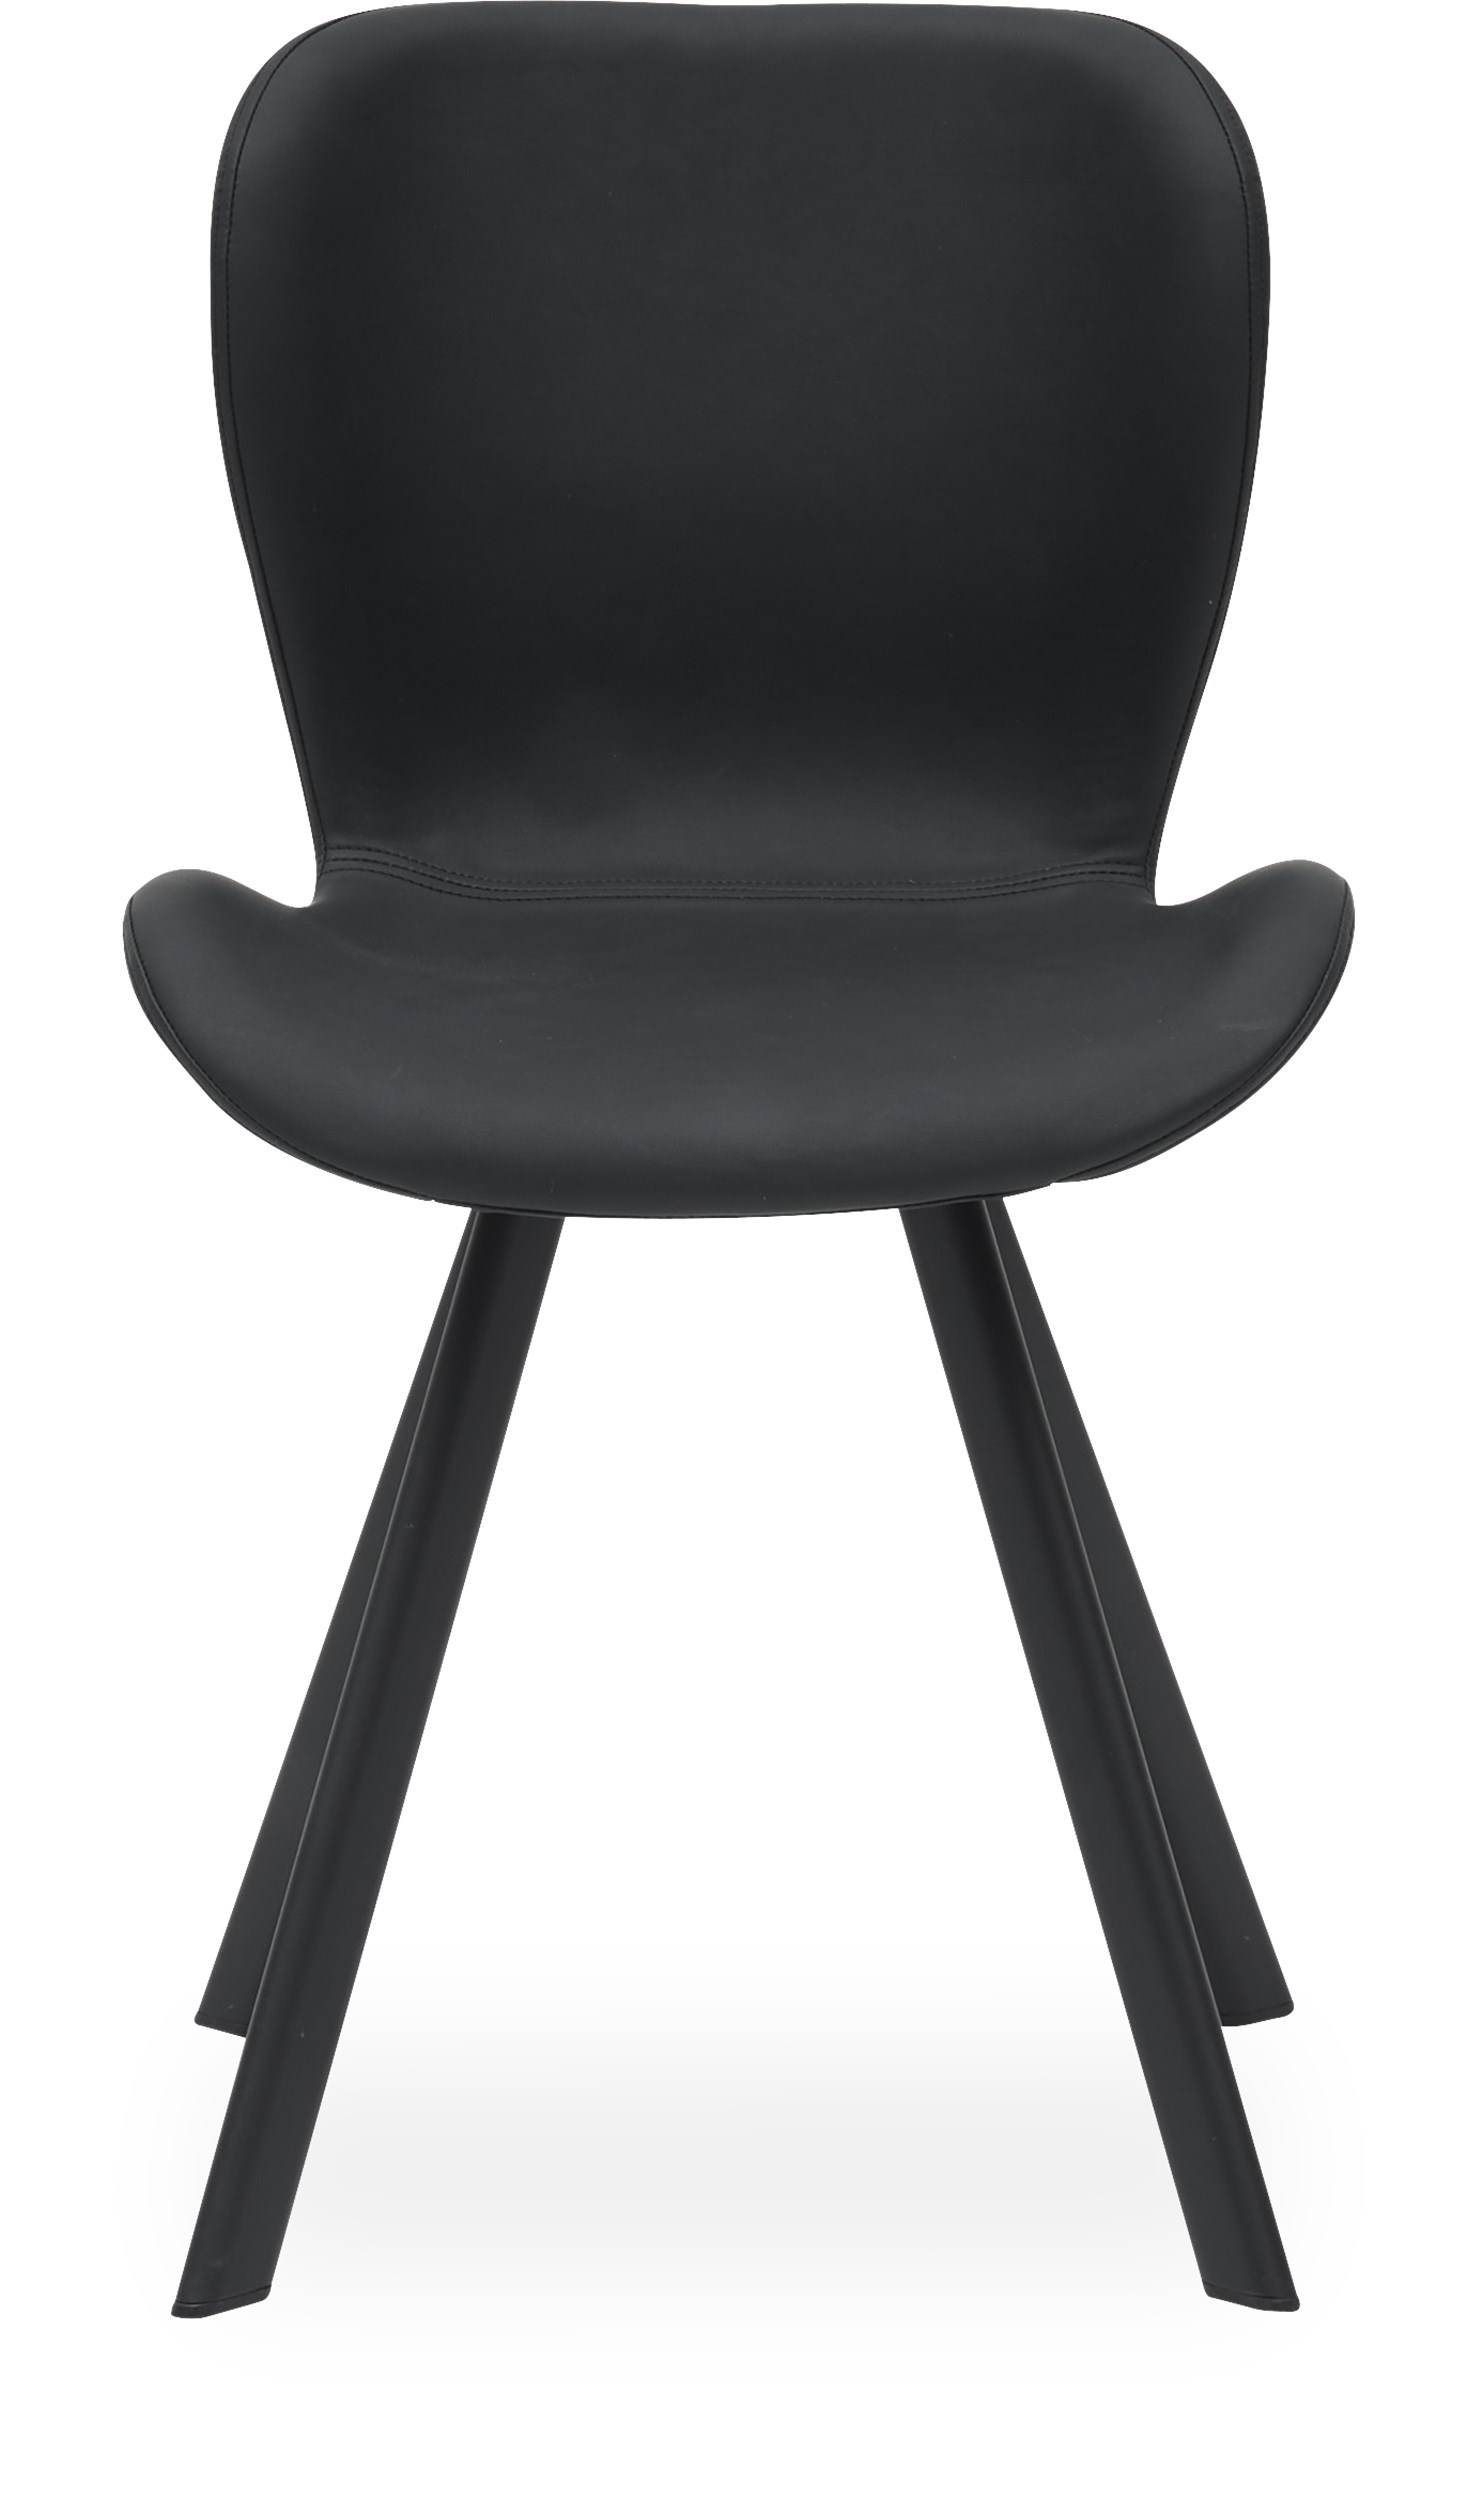 Ally Spisebordsstol - Sort kunstlæder og ben i sort pulverlakeret metal